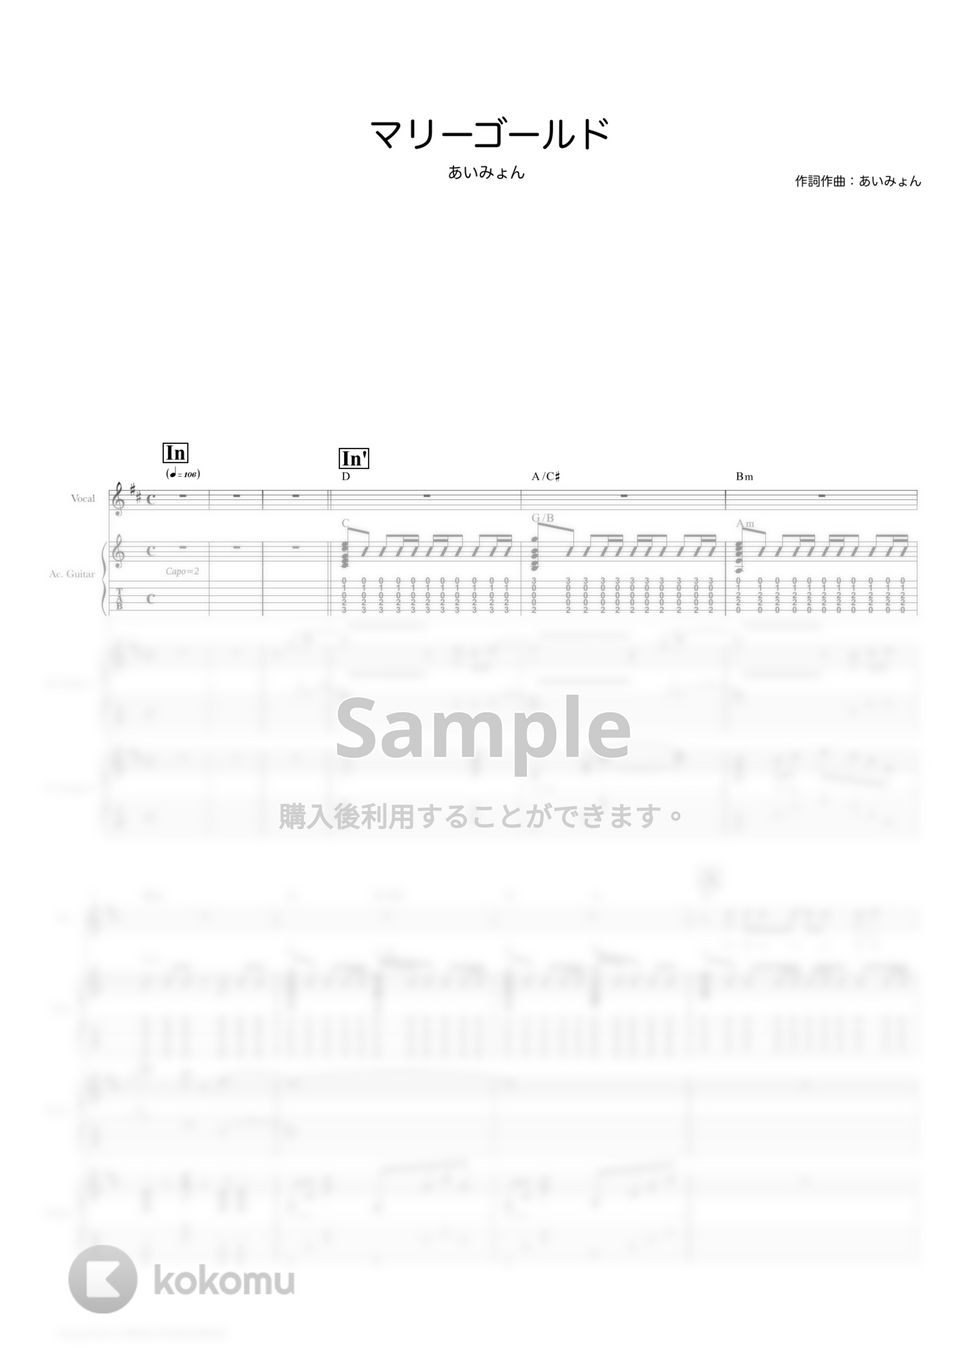 あいみょん - マリーゴールド (ギタースコア・歌詞・コード付き) by TRIAD GUITAR SCHOOL